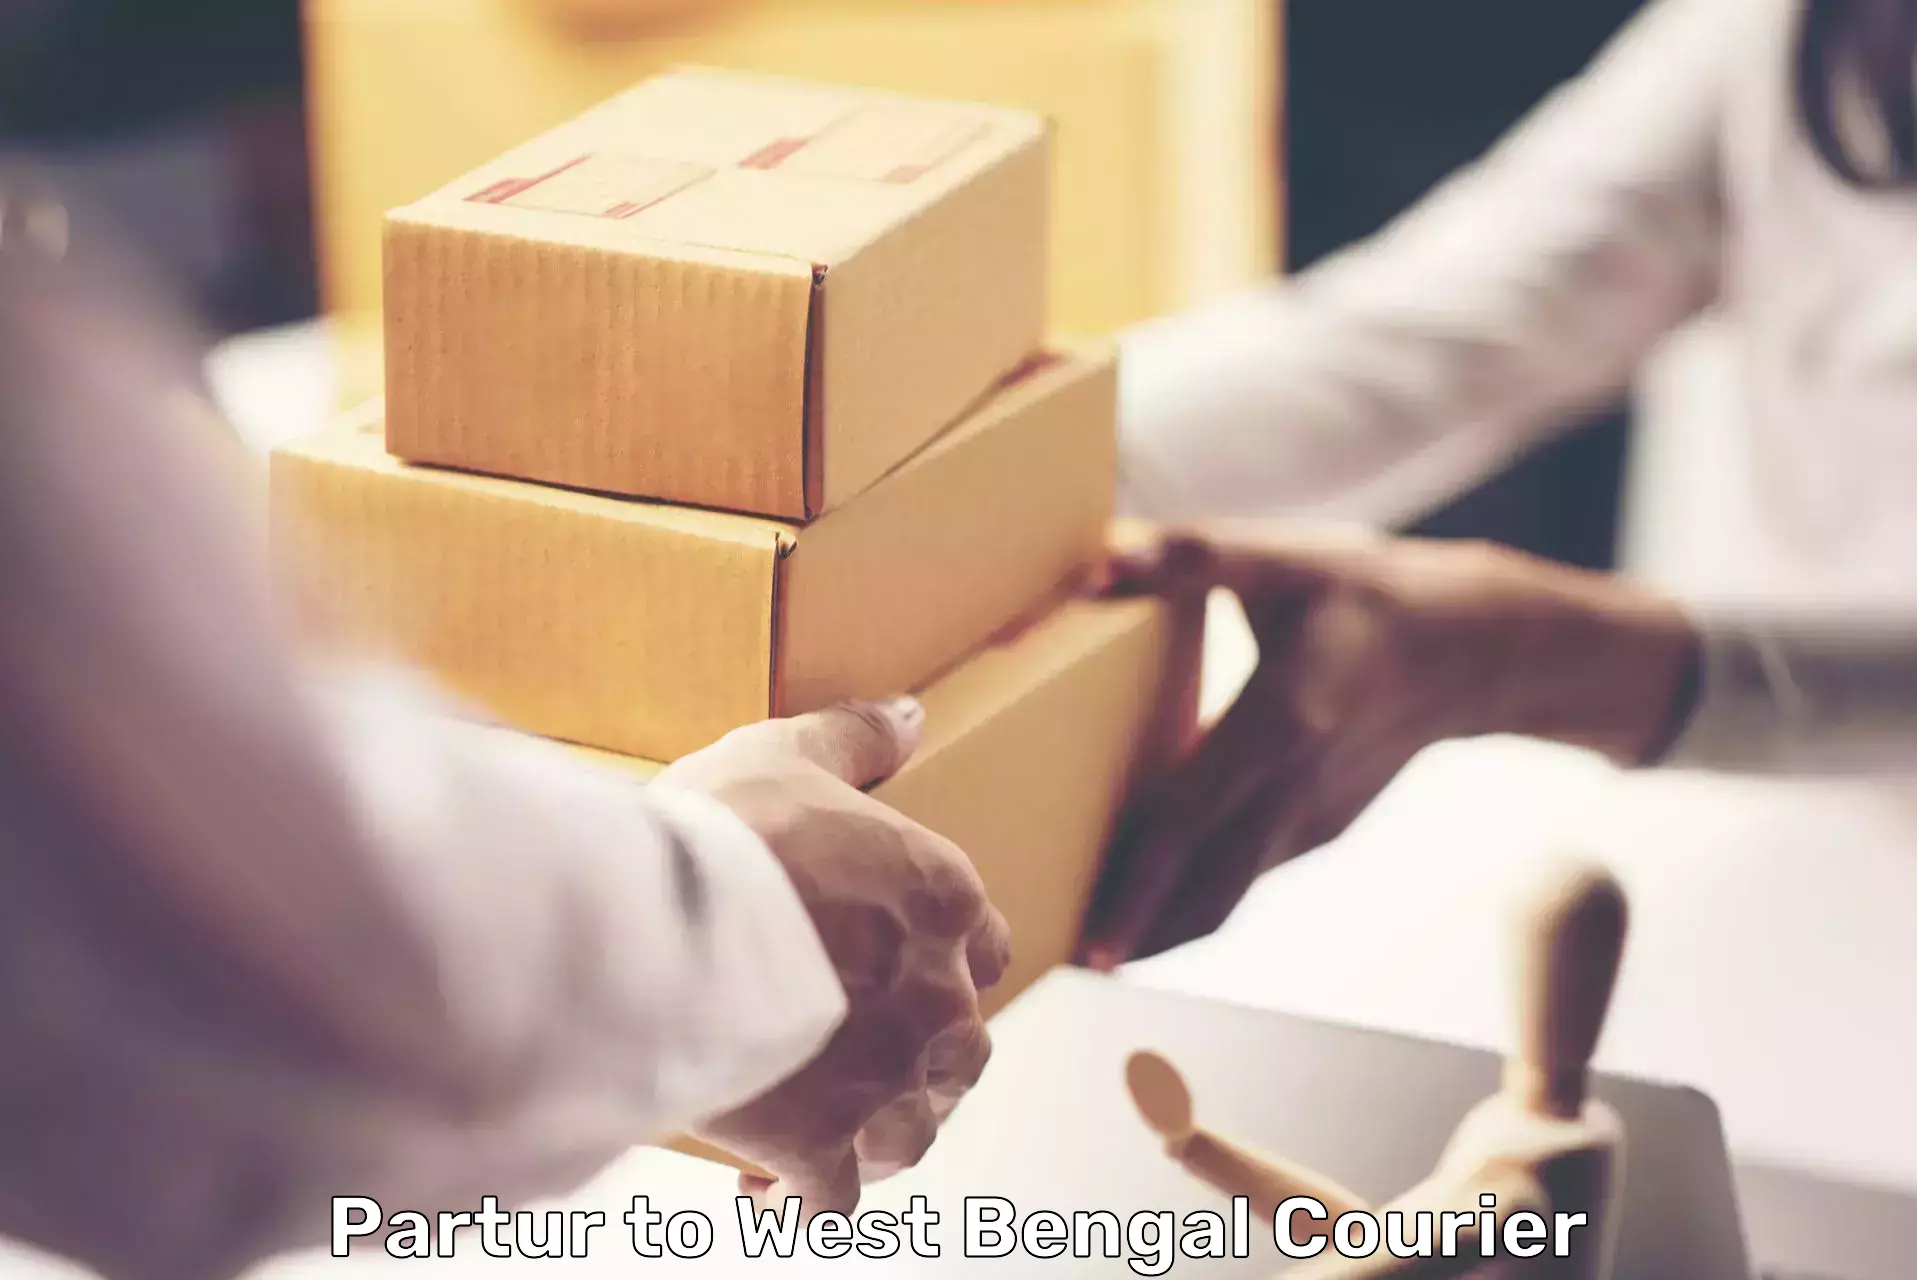 Individual parcel service Partur to West Bengal